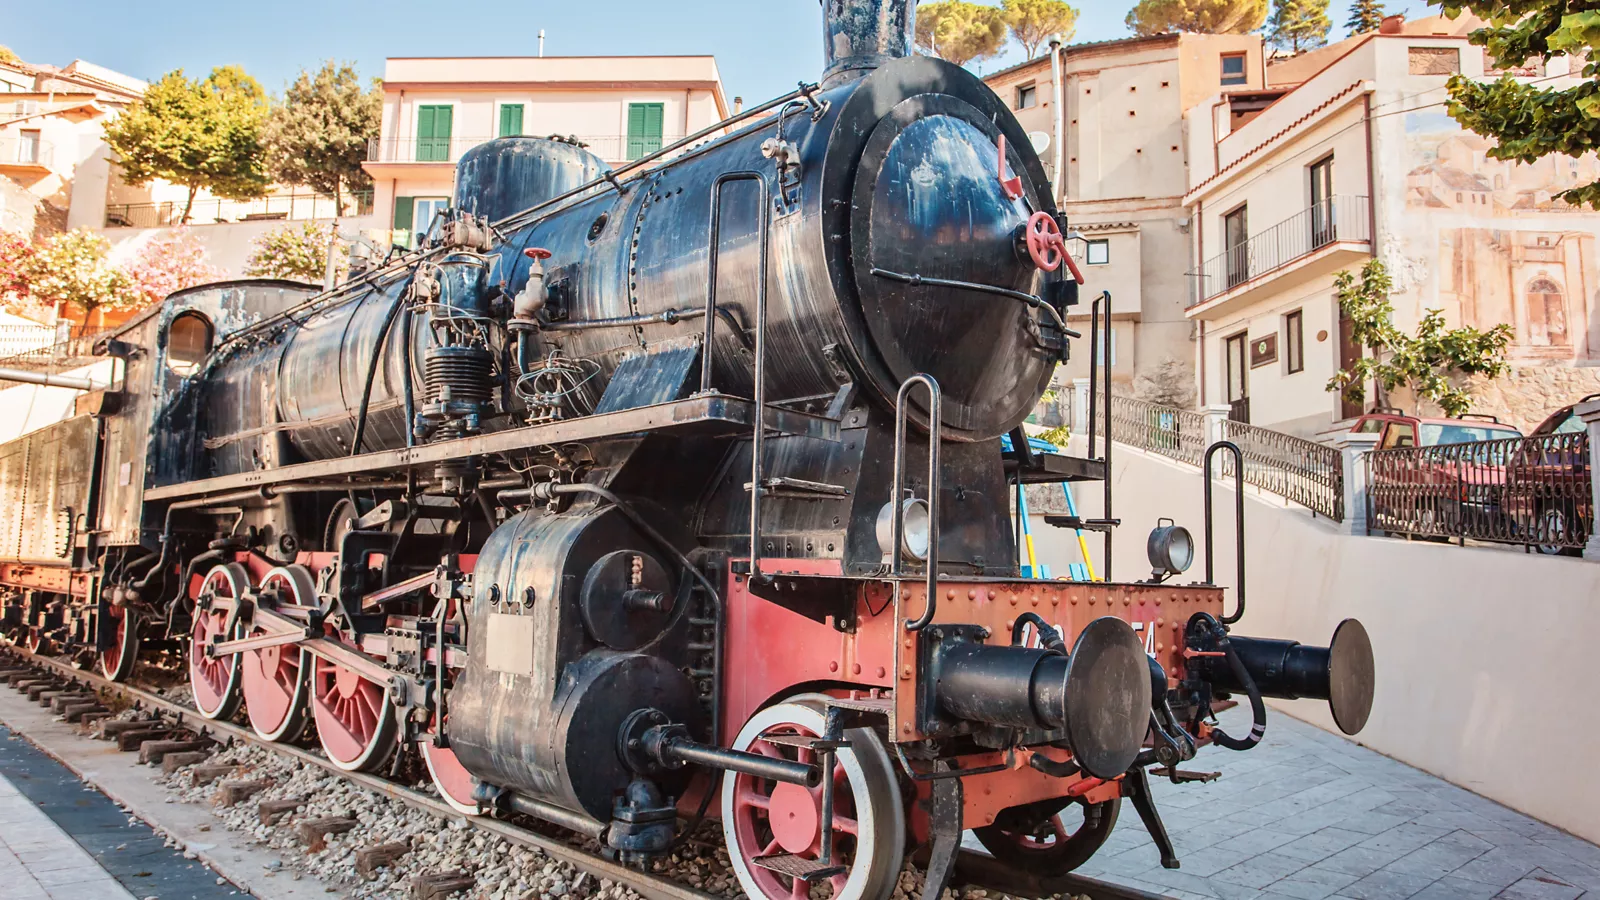 The Sila Train in Calabria